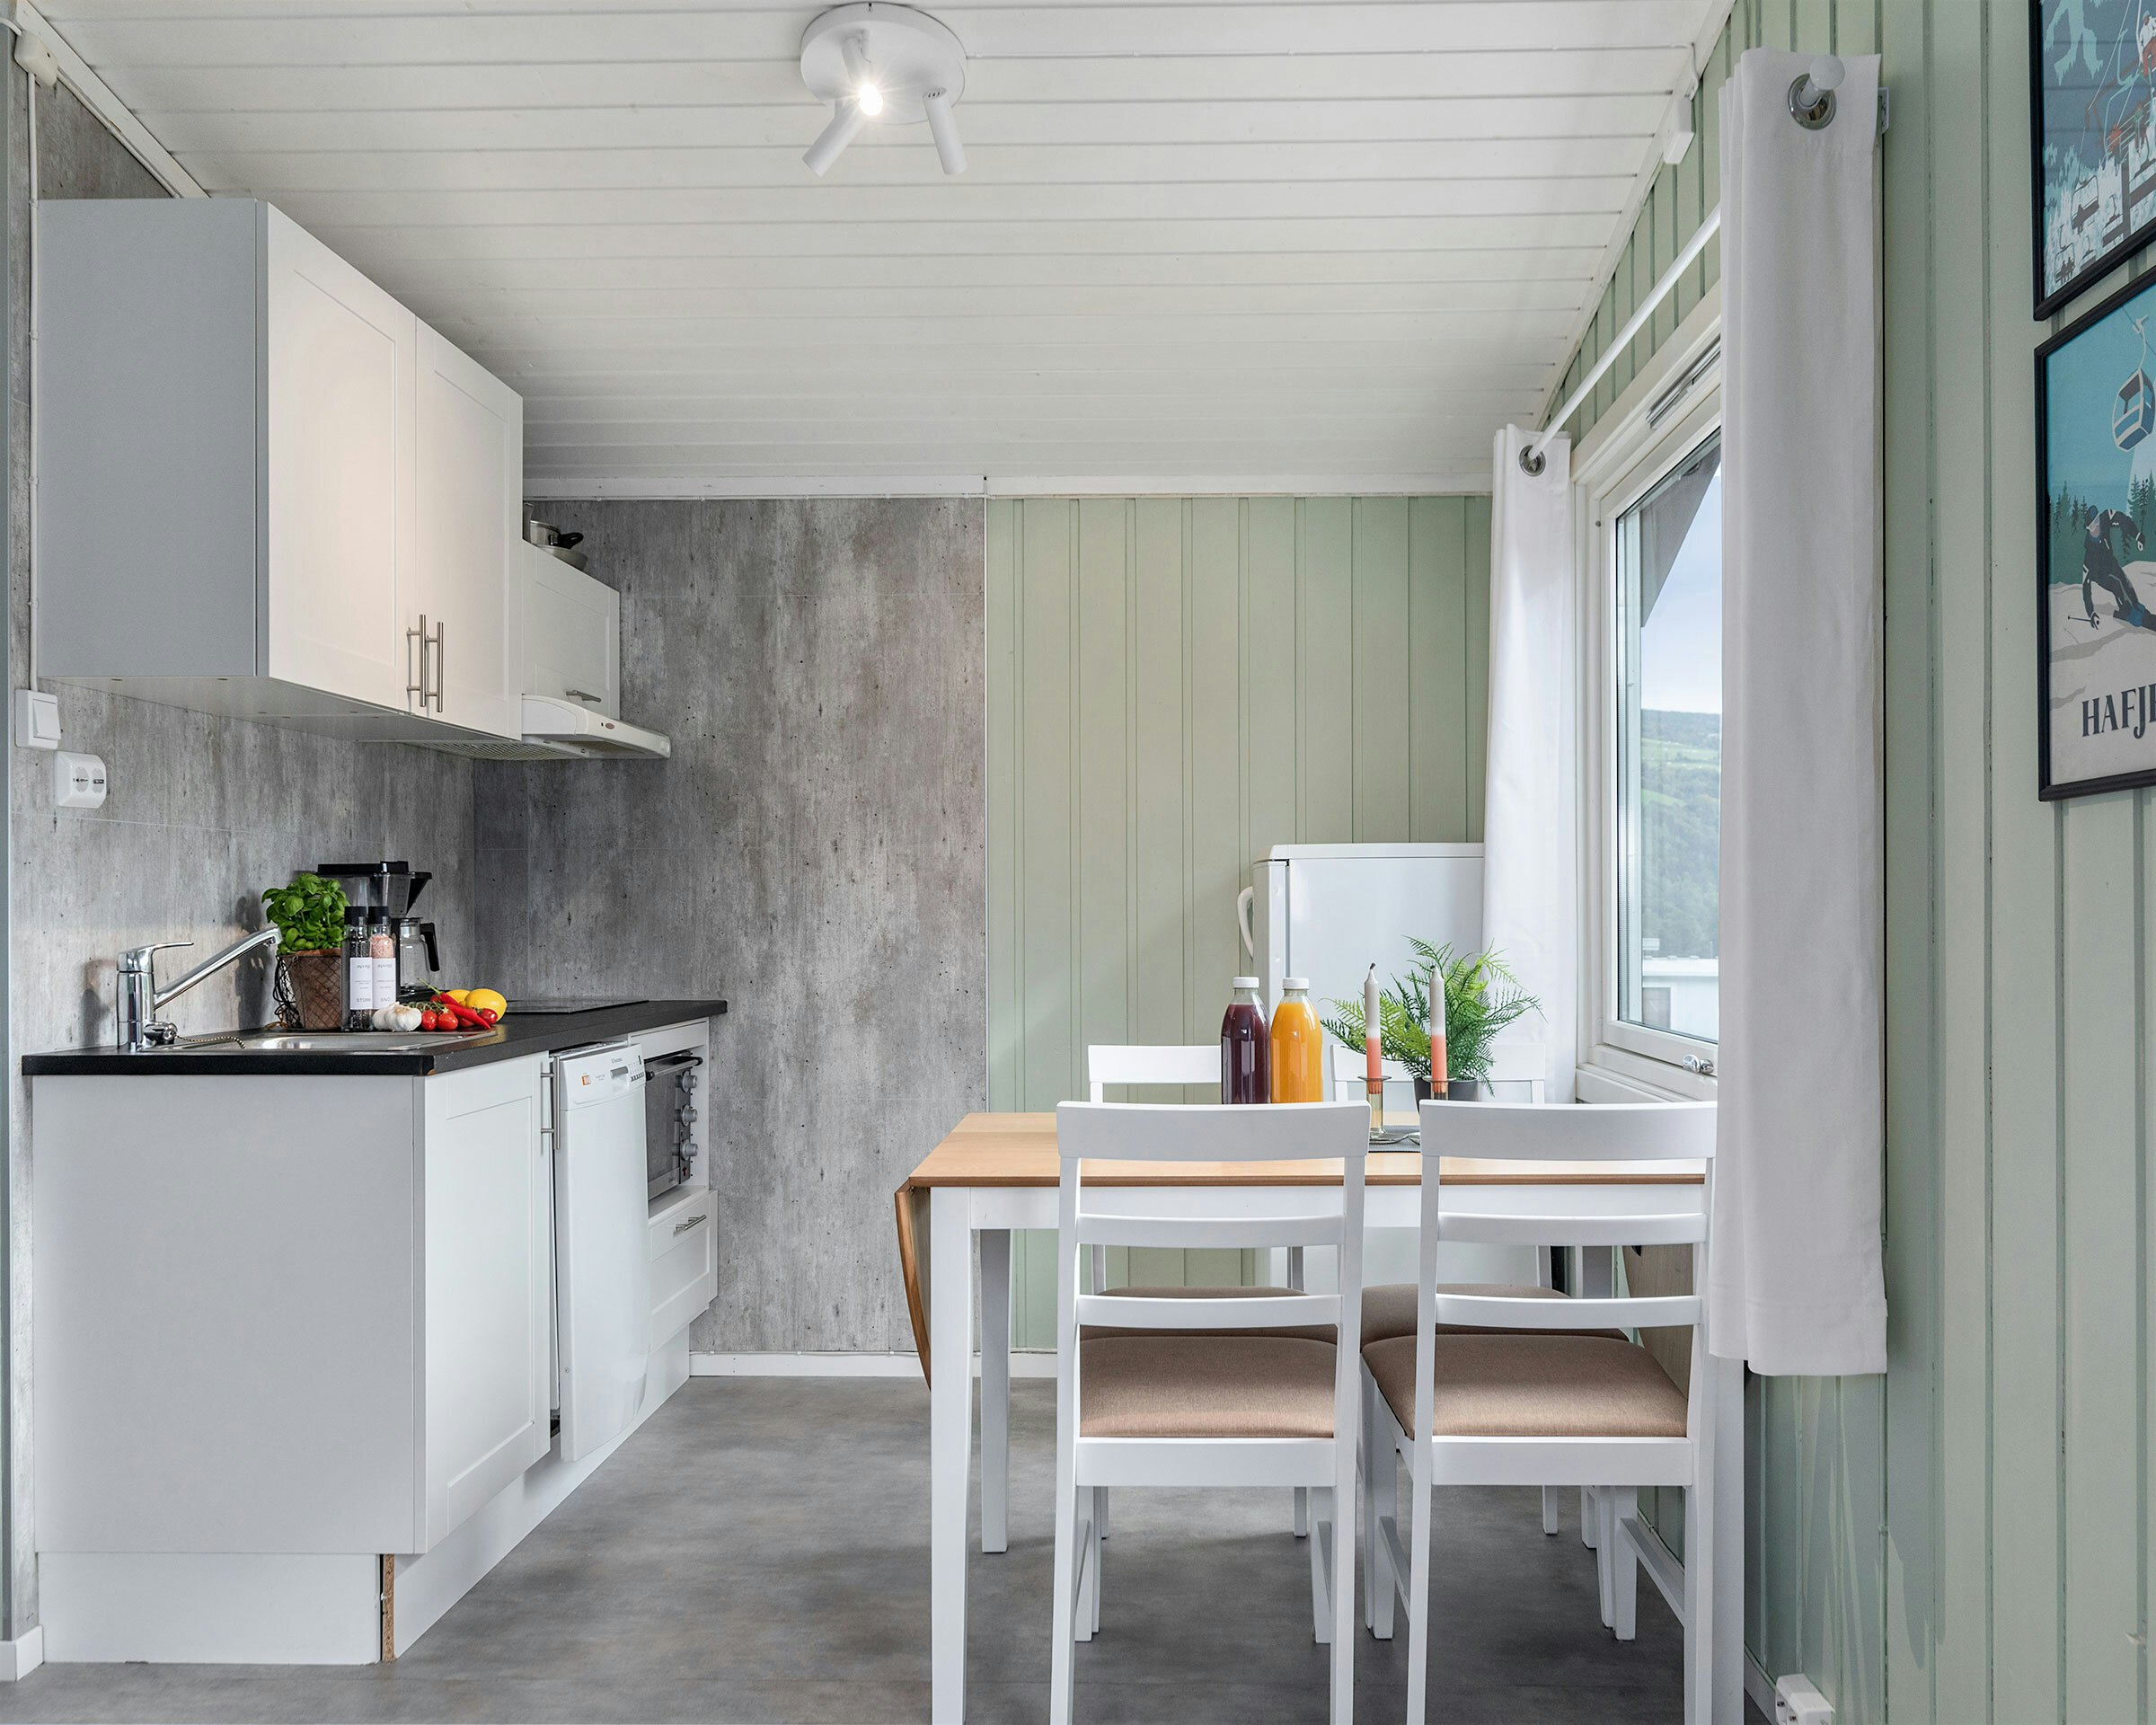 Helle Küche mit hellgrünen Wänden, Gemüse auf der Küchentheke, Esstisch mit Pflanzen, Kerzenständern und Saft. Foto